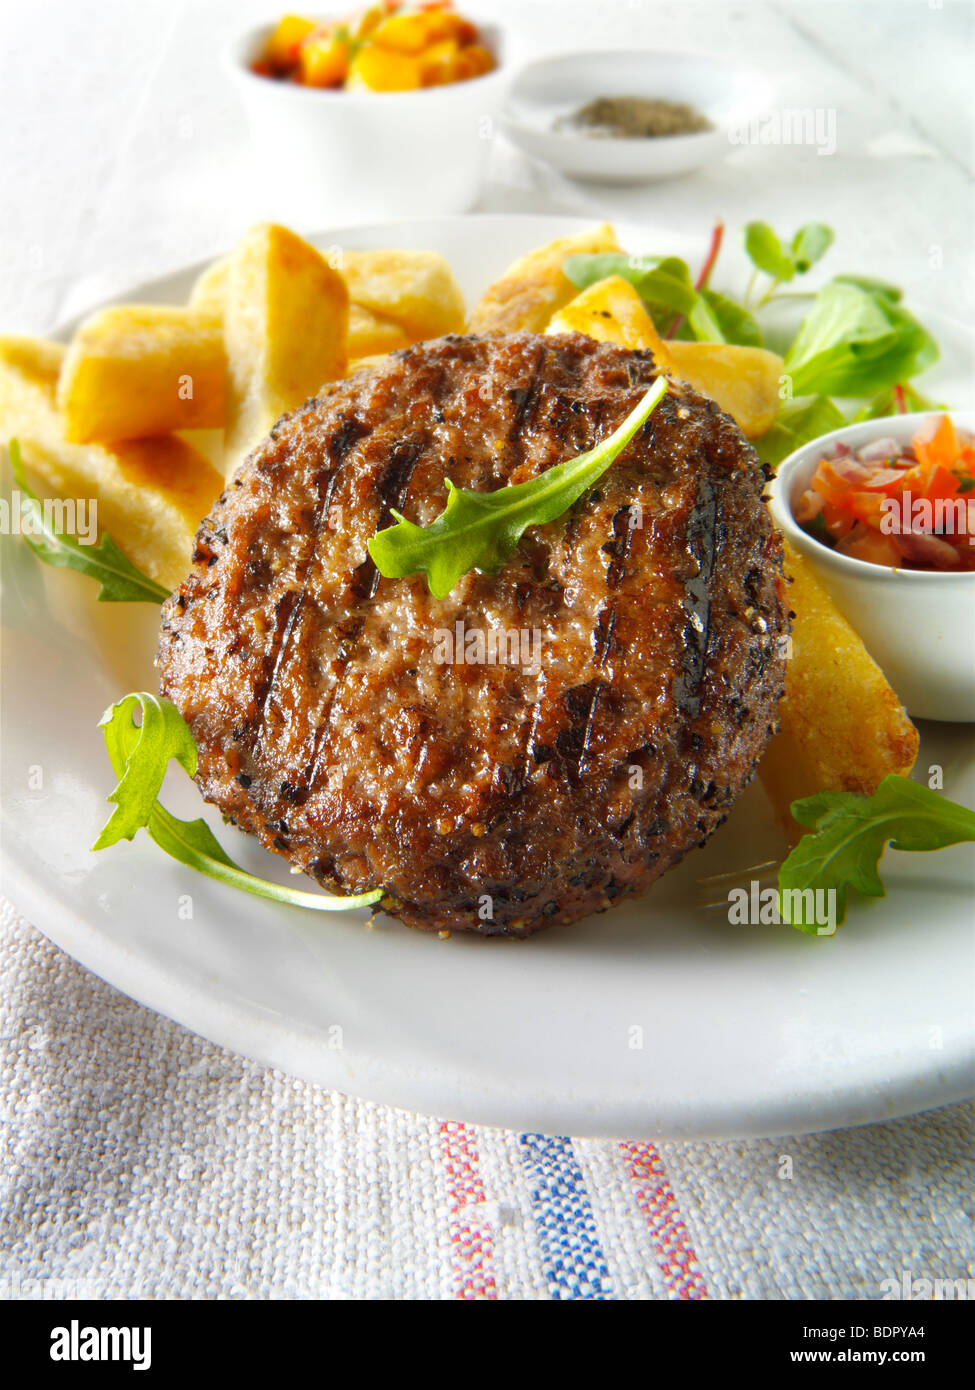 Burger de boeuf grillé avec des frites et de la salade chunky Banque D'Images